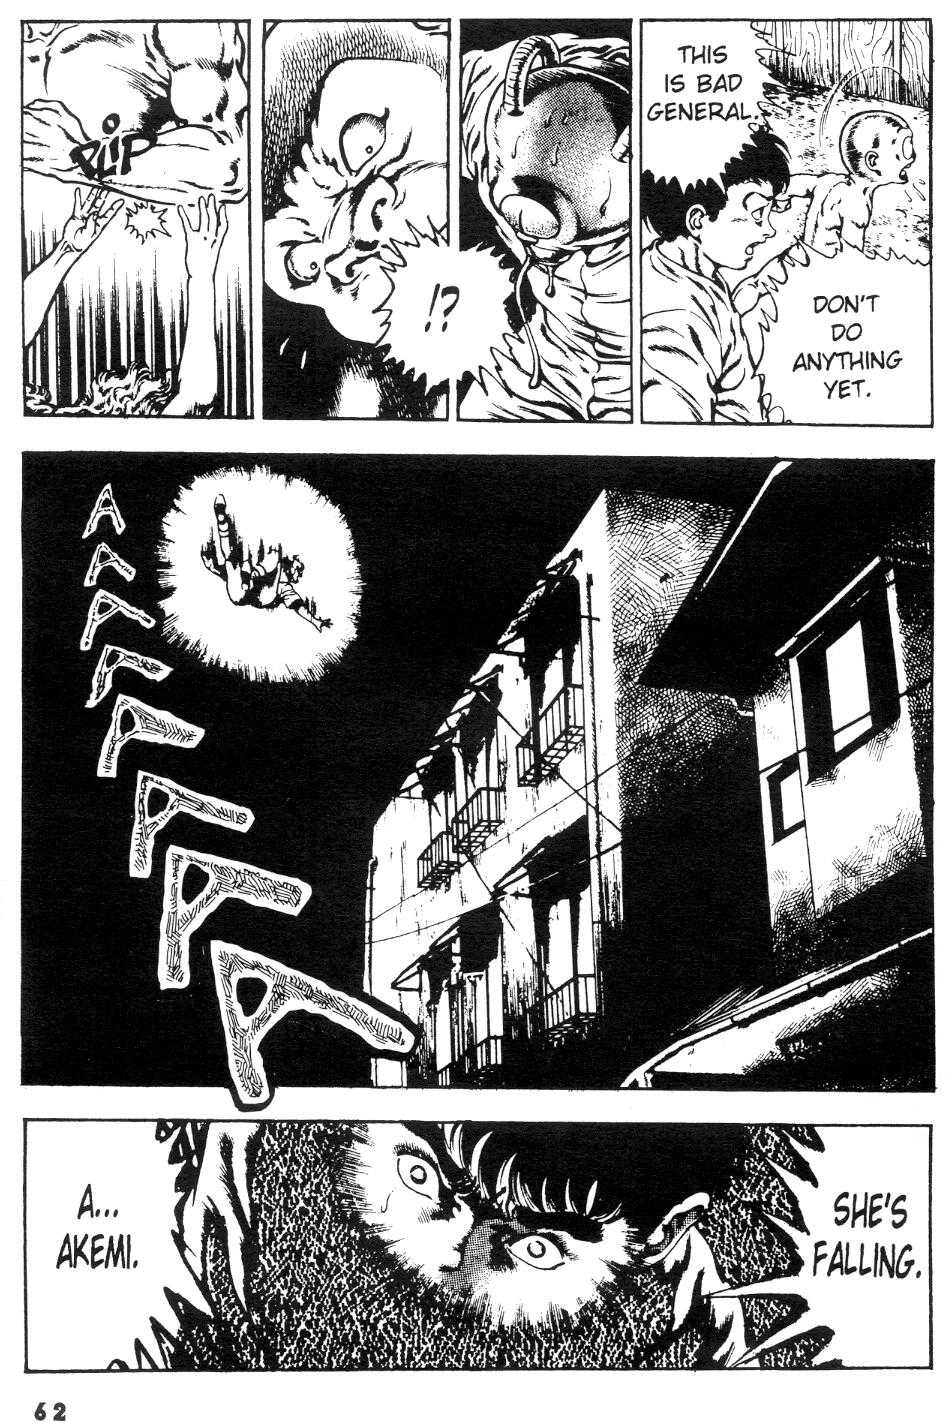 [Manga18][Toshio Maeda] Urotsukidoji - Return of the Overfiend No 2 (english) 